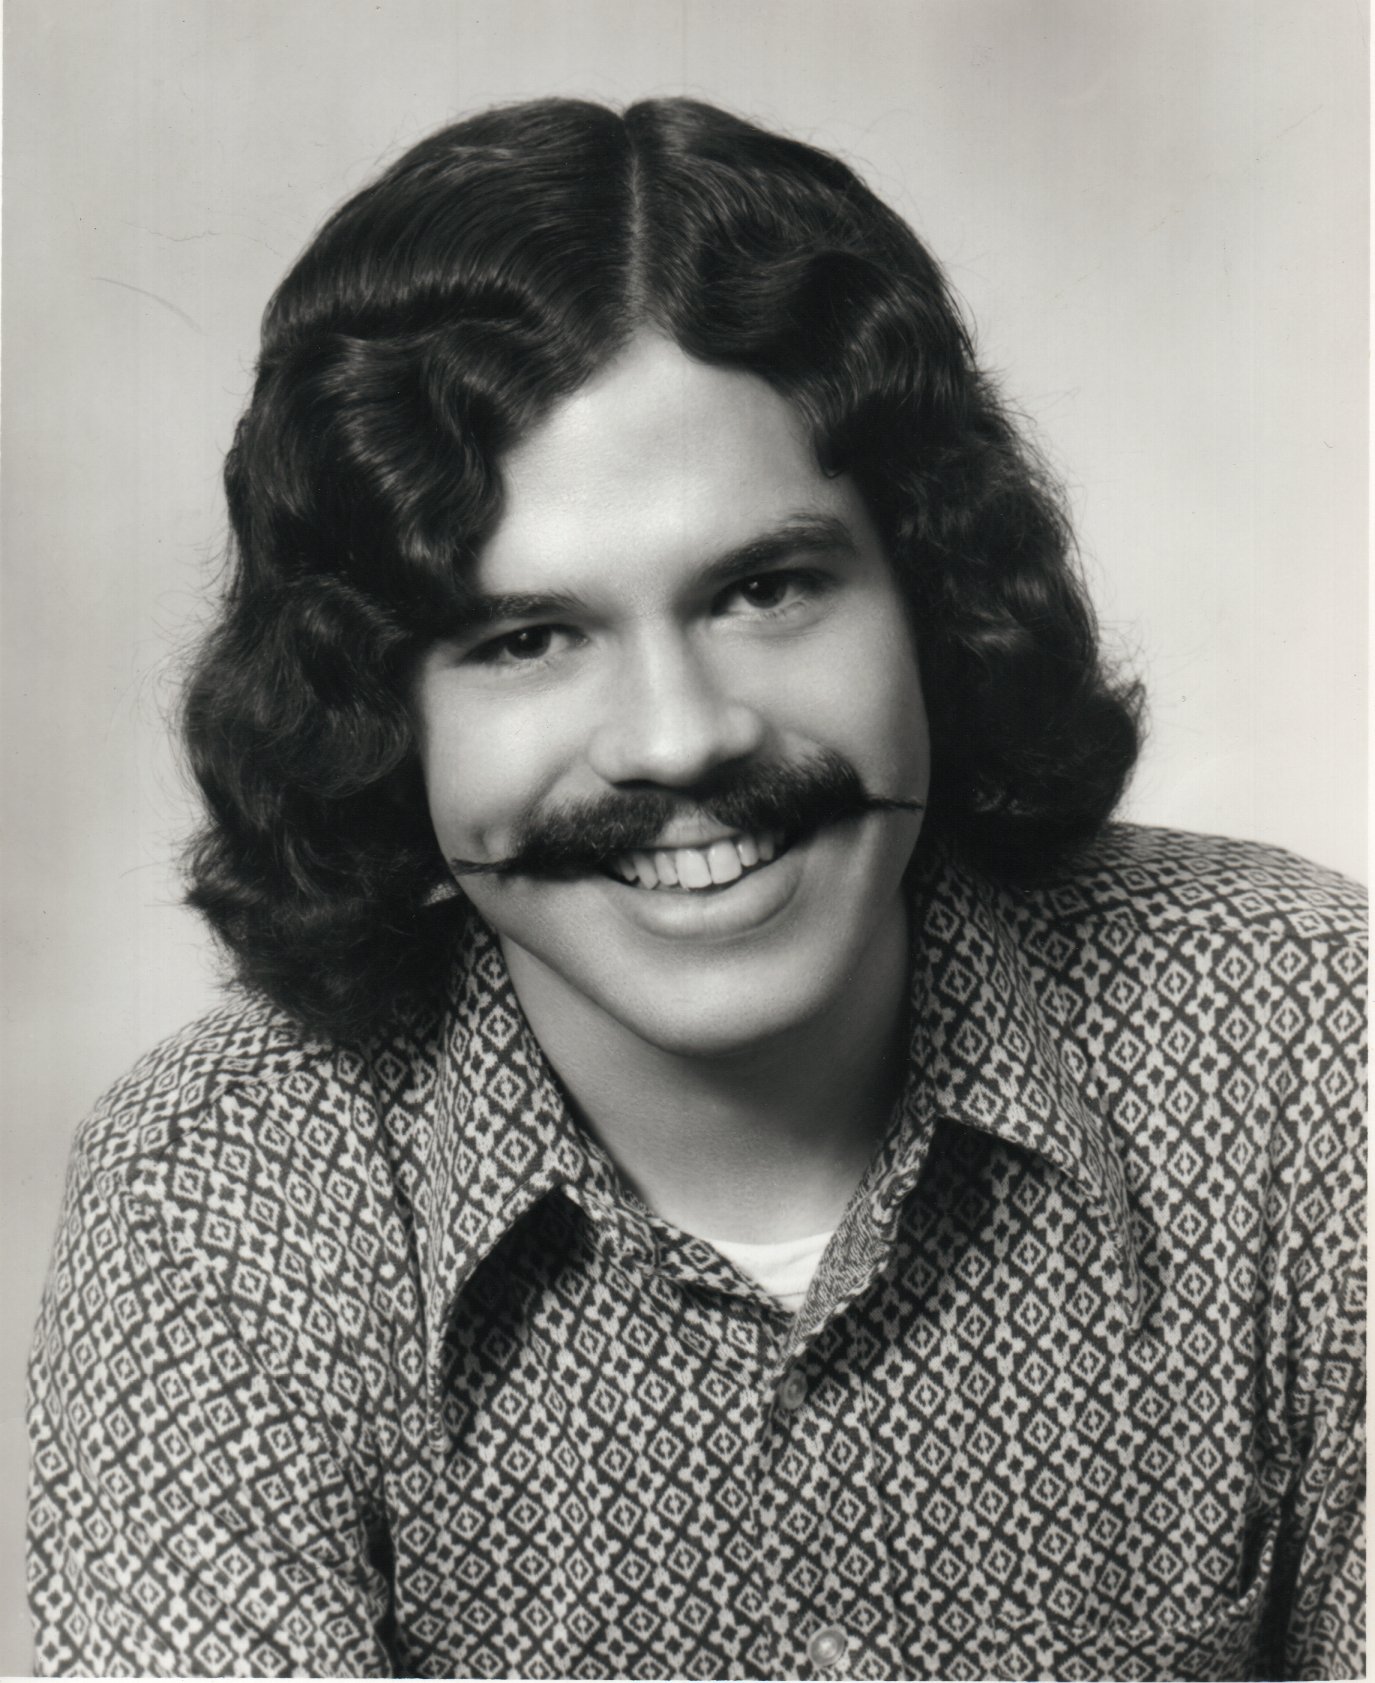 Фото мужчин 80 годов. Усатый певец 70. Мужские причёски 70-х годов. Мужские стрижки 70-х. Модные стрижки 70-х годов мужские.